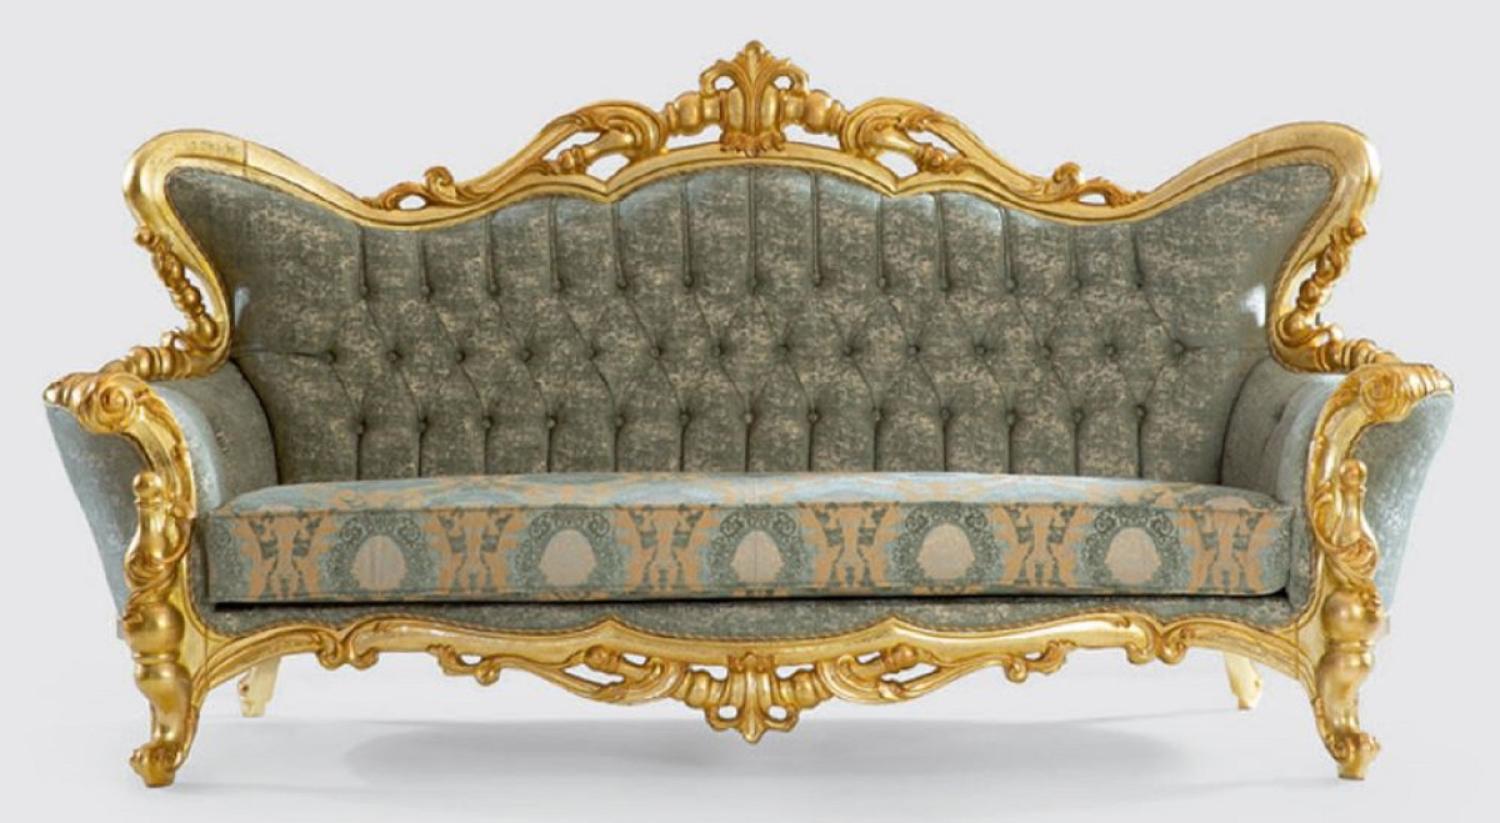 Casa Padrino Luxus Barock Sofa Grün / Gold 245 x 90 x H. 126 cm - Handgefertigtes Wohnzimmer Sofa mit elegantem Muster - Barock Wohnzimmer Möbel Bild 1